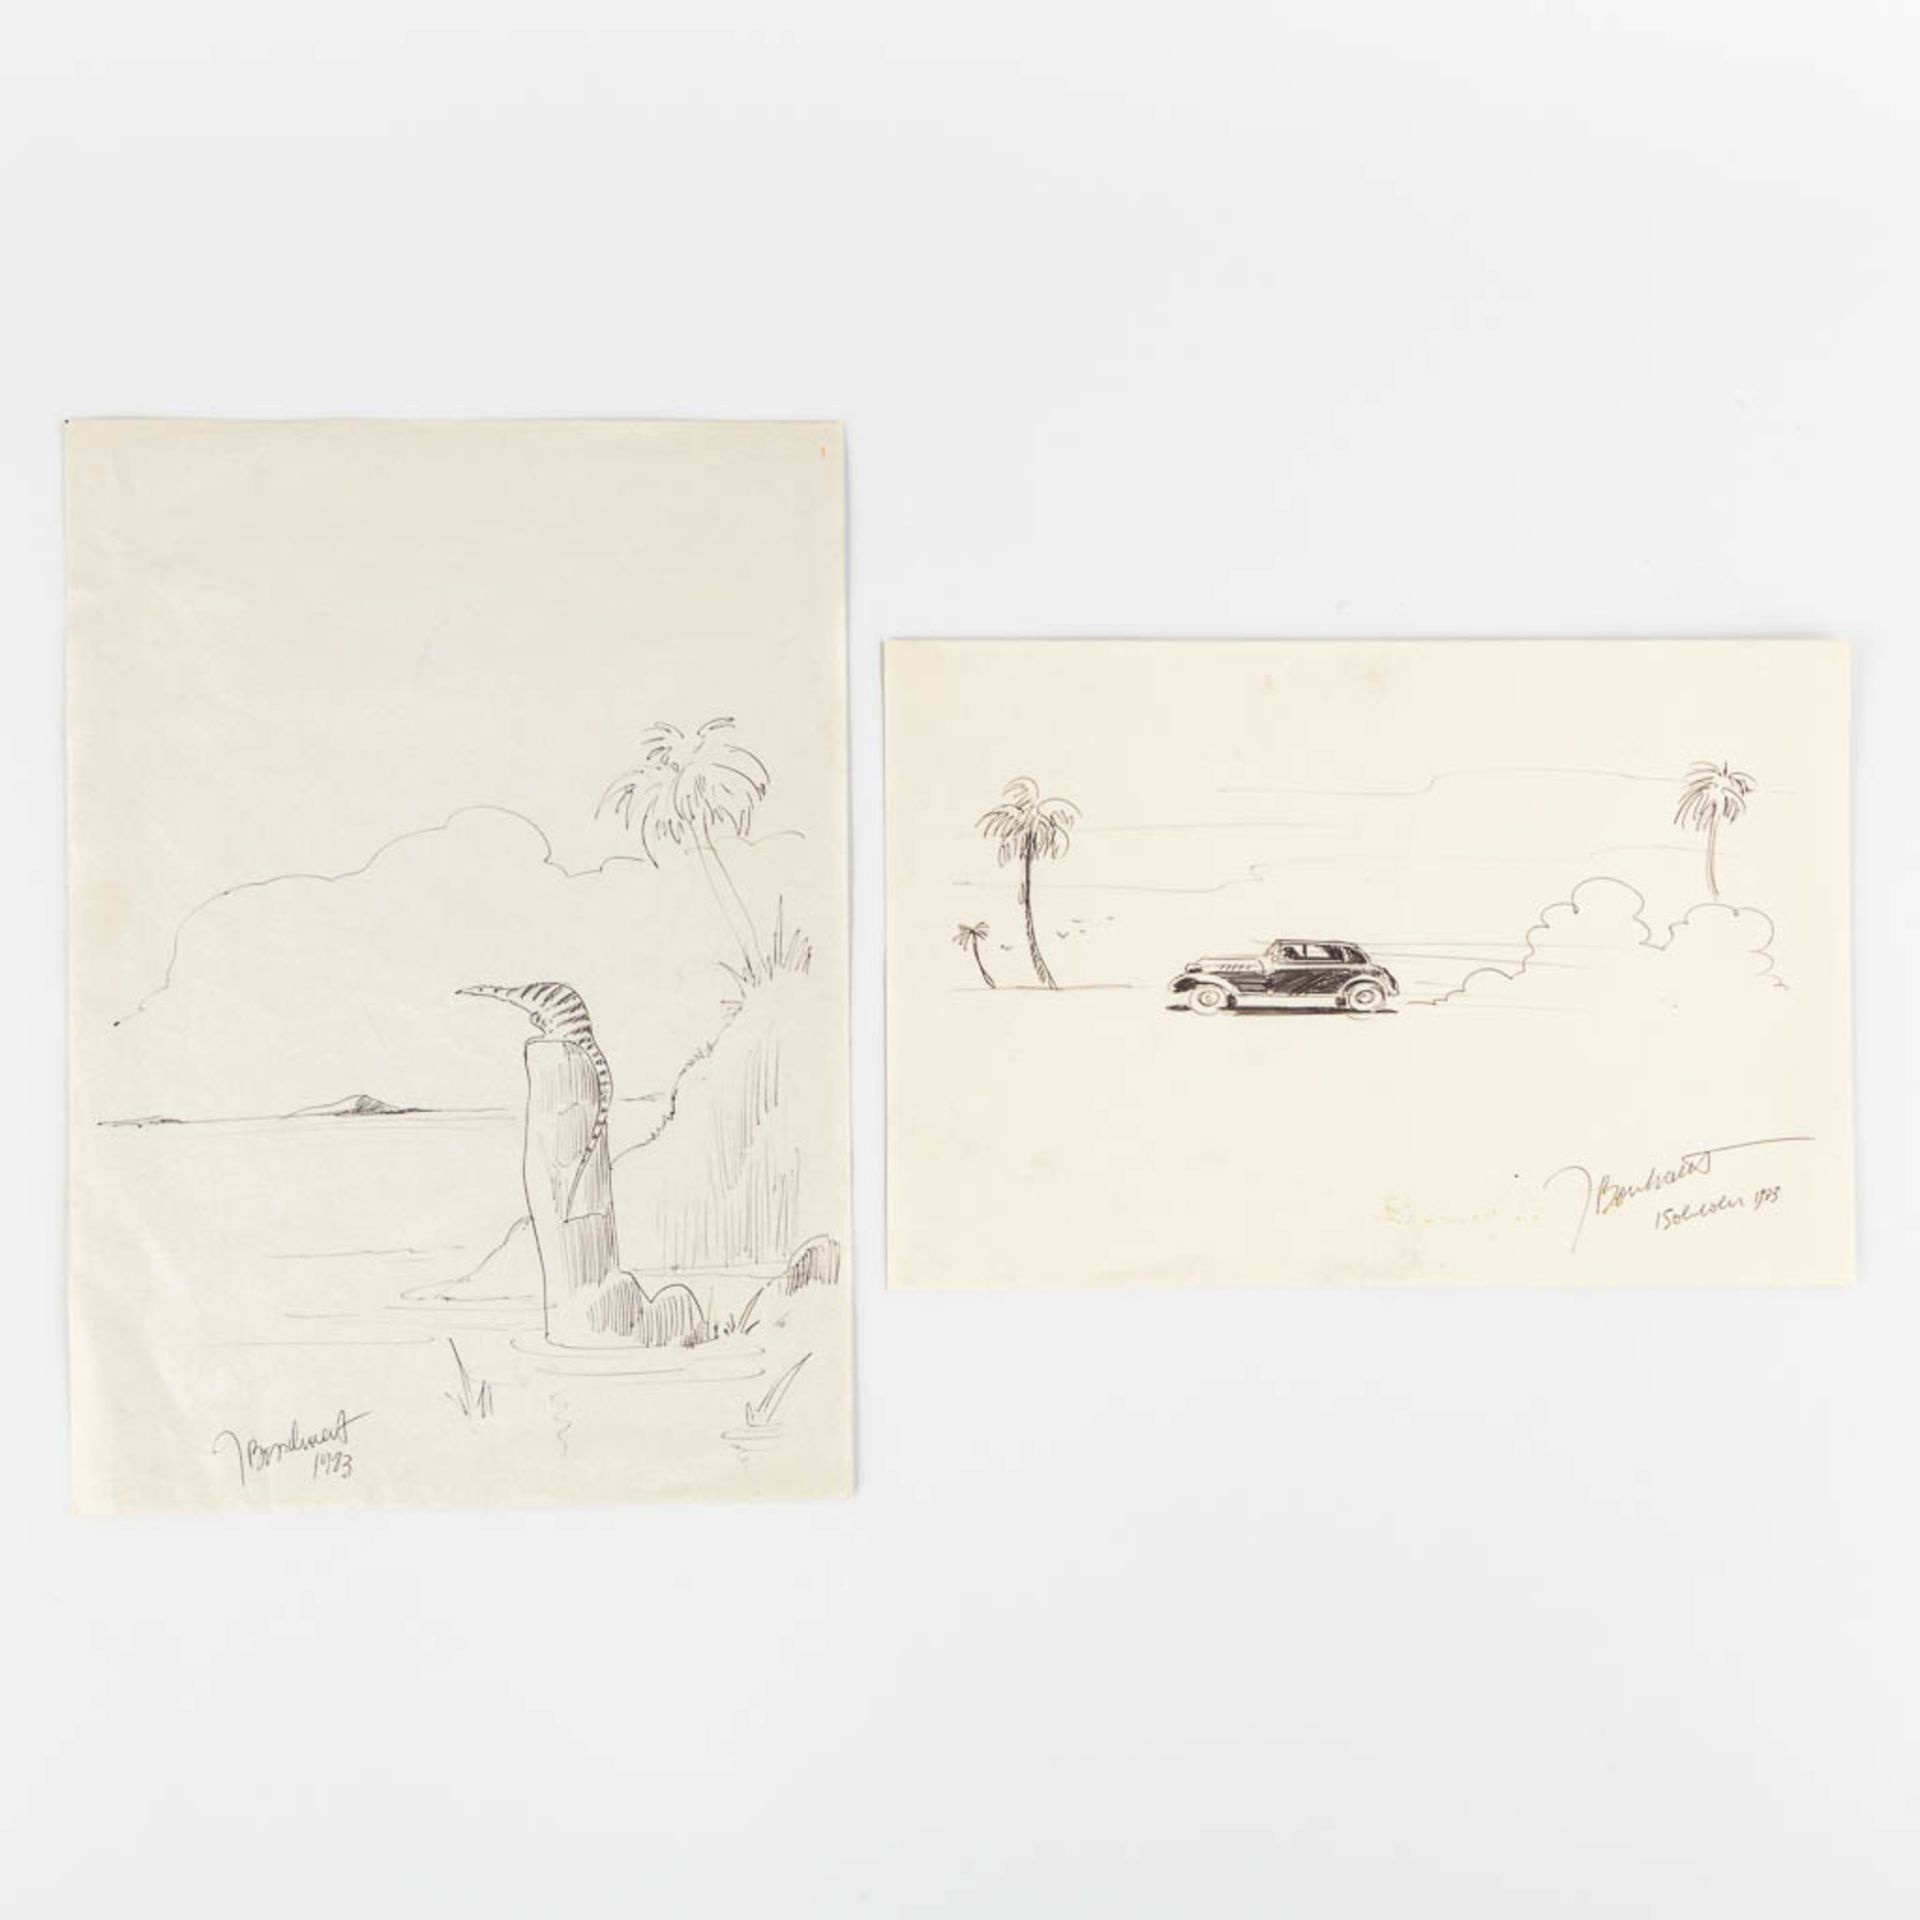 Jan BOSSCHAERT (1957) 'Two drawings' pen on paper. (W:21 x H:29,5 cm)